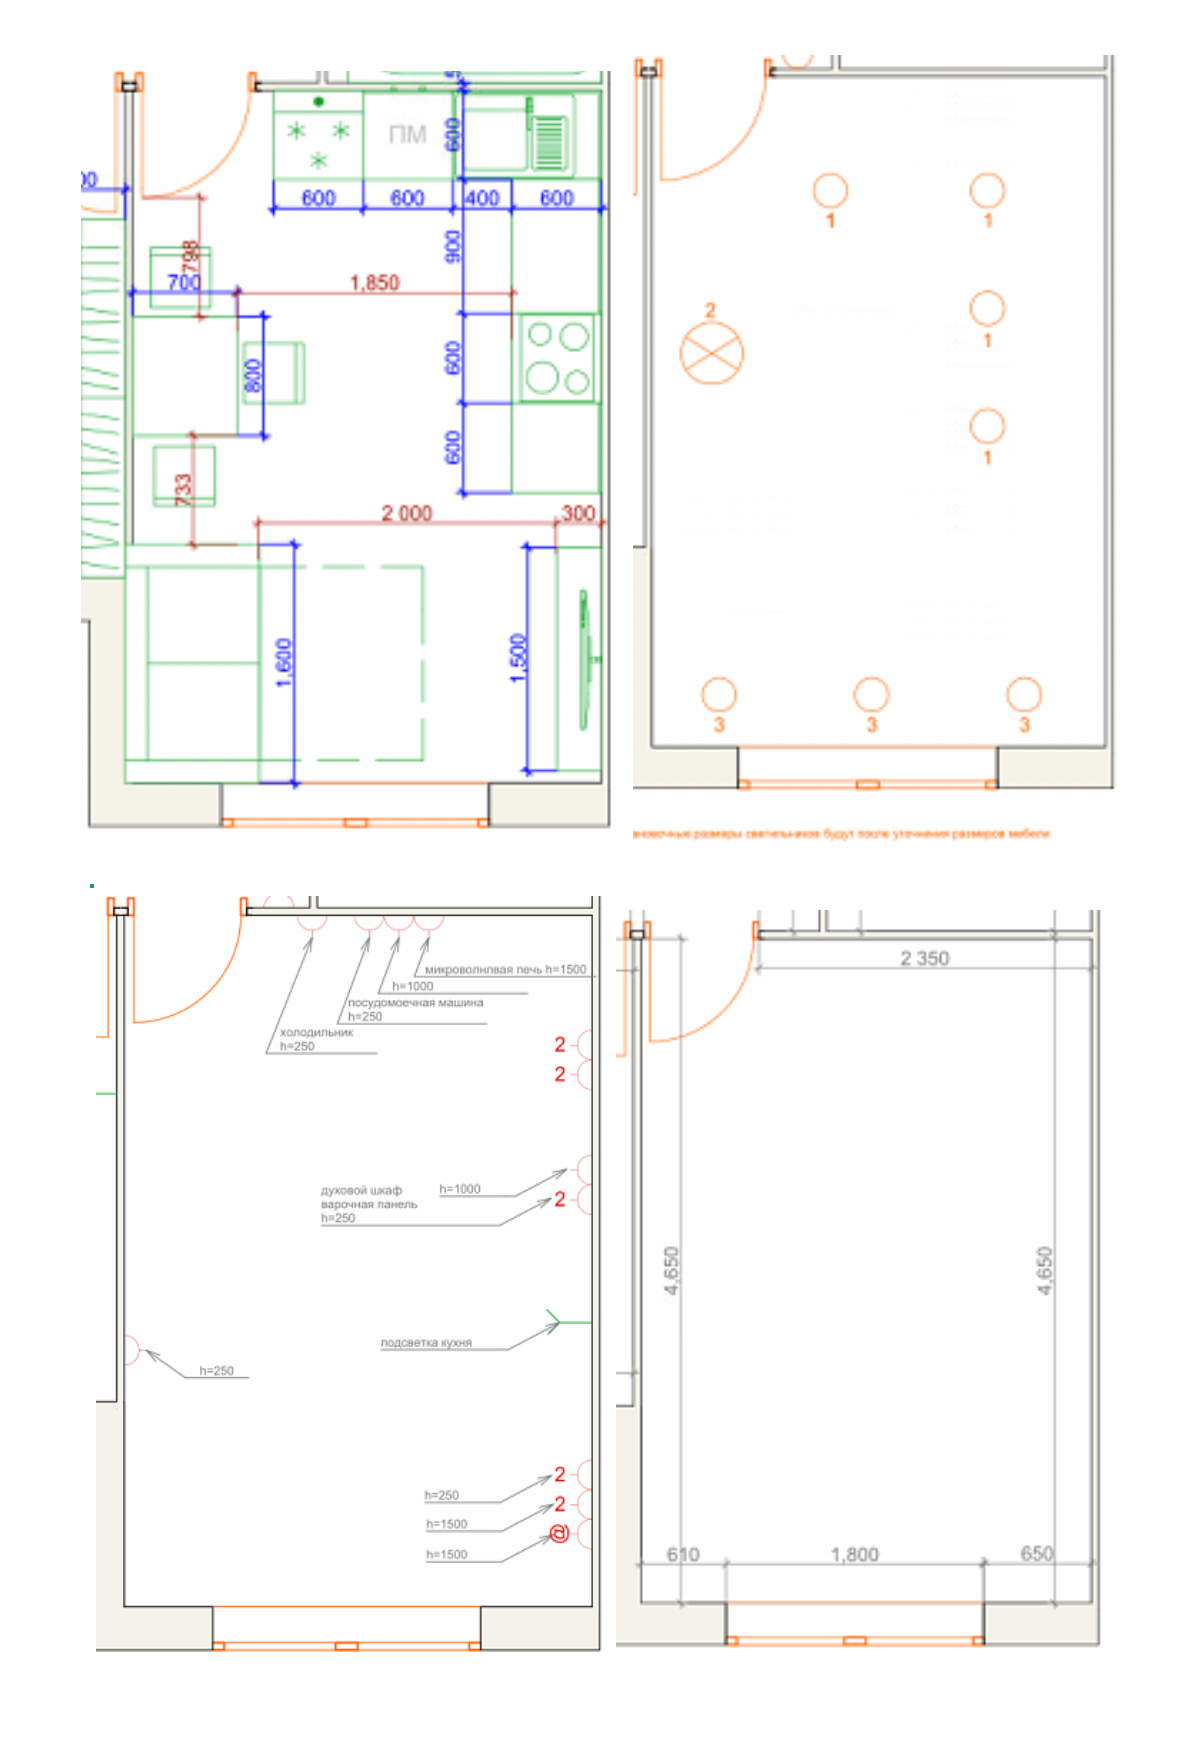 Это лишь несколько страниц из большого pdf-файла с проектом квартиры: каждая страница посвящена определенному аспекту. Здесь показано, как будет стоять мебель, какой план освещения и где розетки на кухне. Такие&nbsp;же планы были для&nbsp;всех комнат, прихожей, ванной, балкона